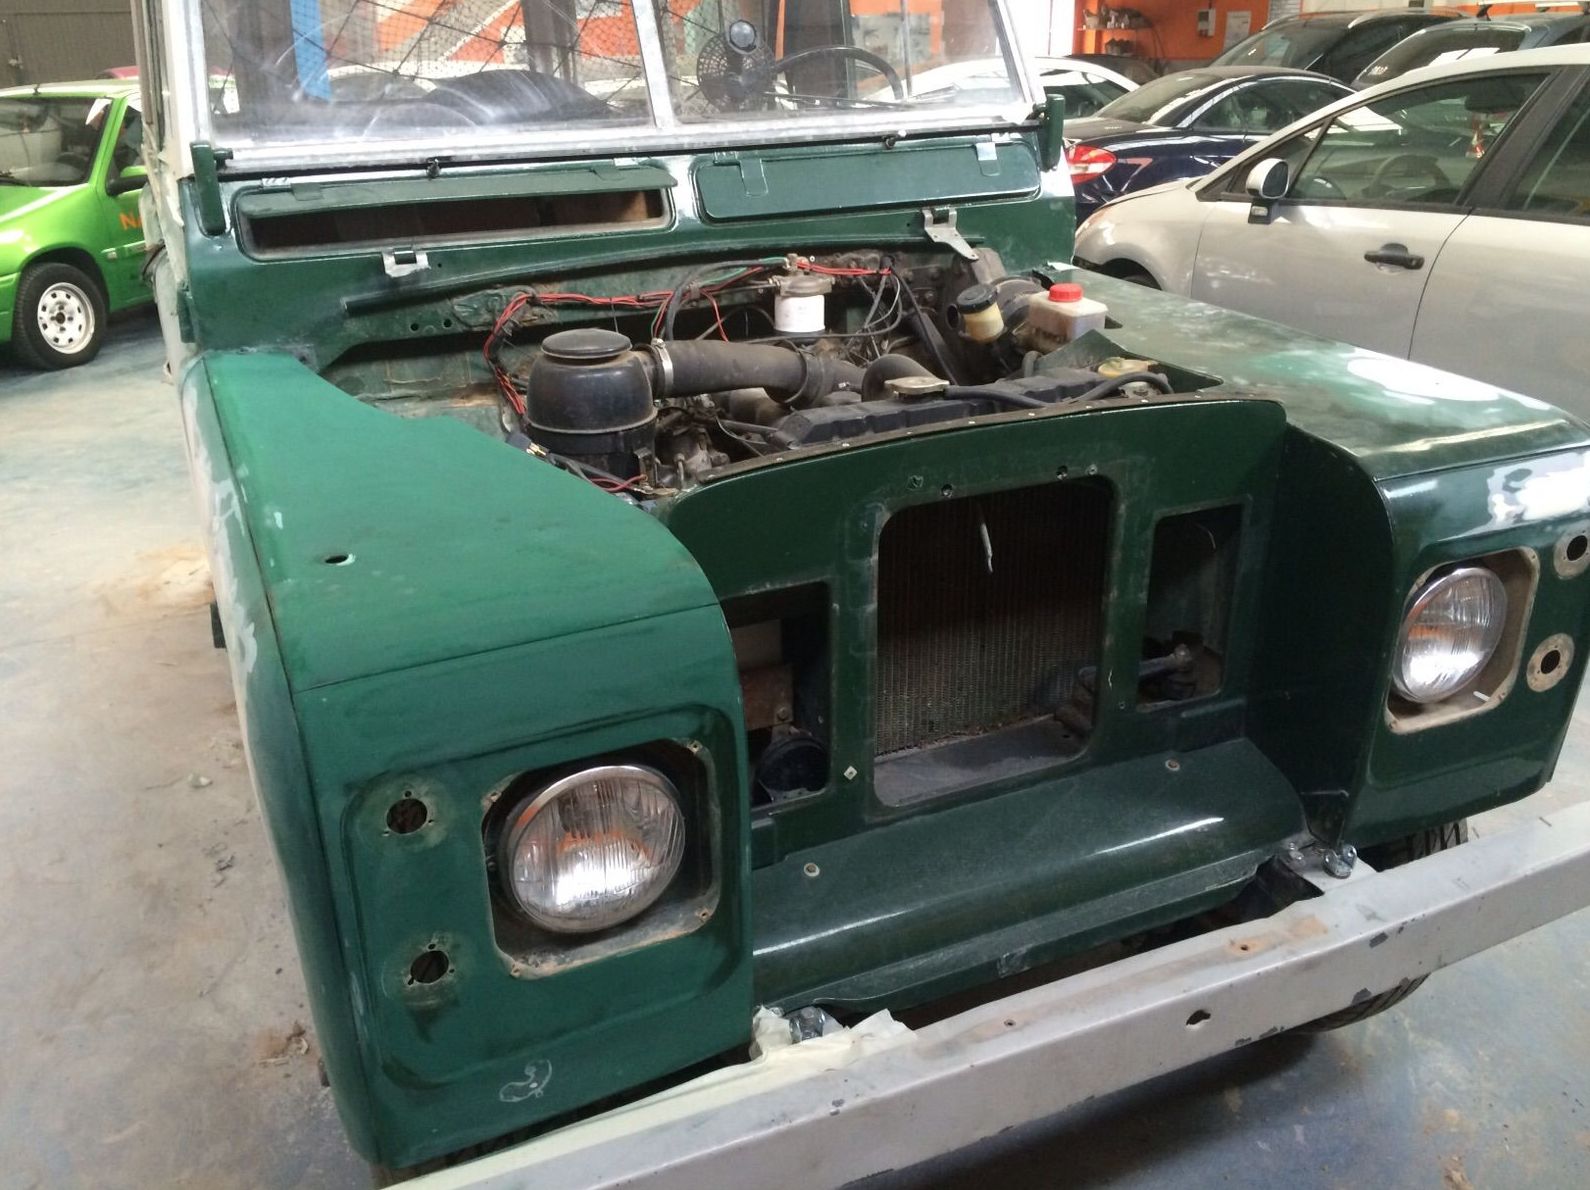 Comienzo del proceso de restauración de este Land Rover Santana ´77